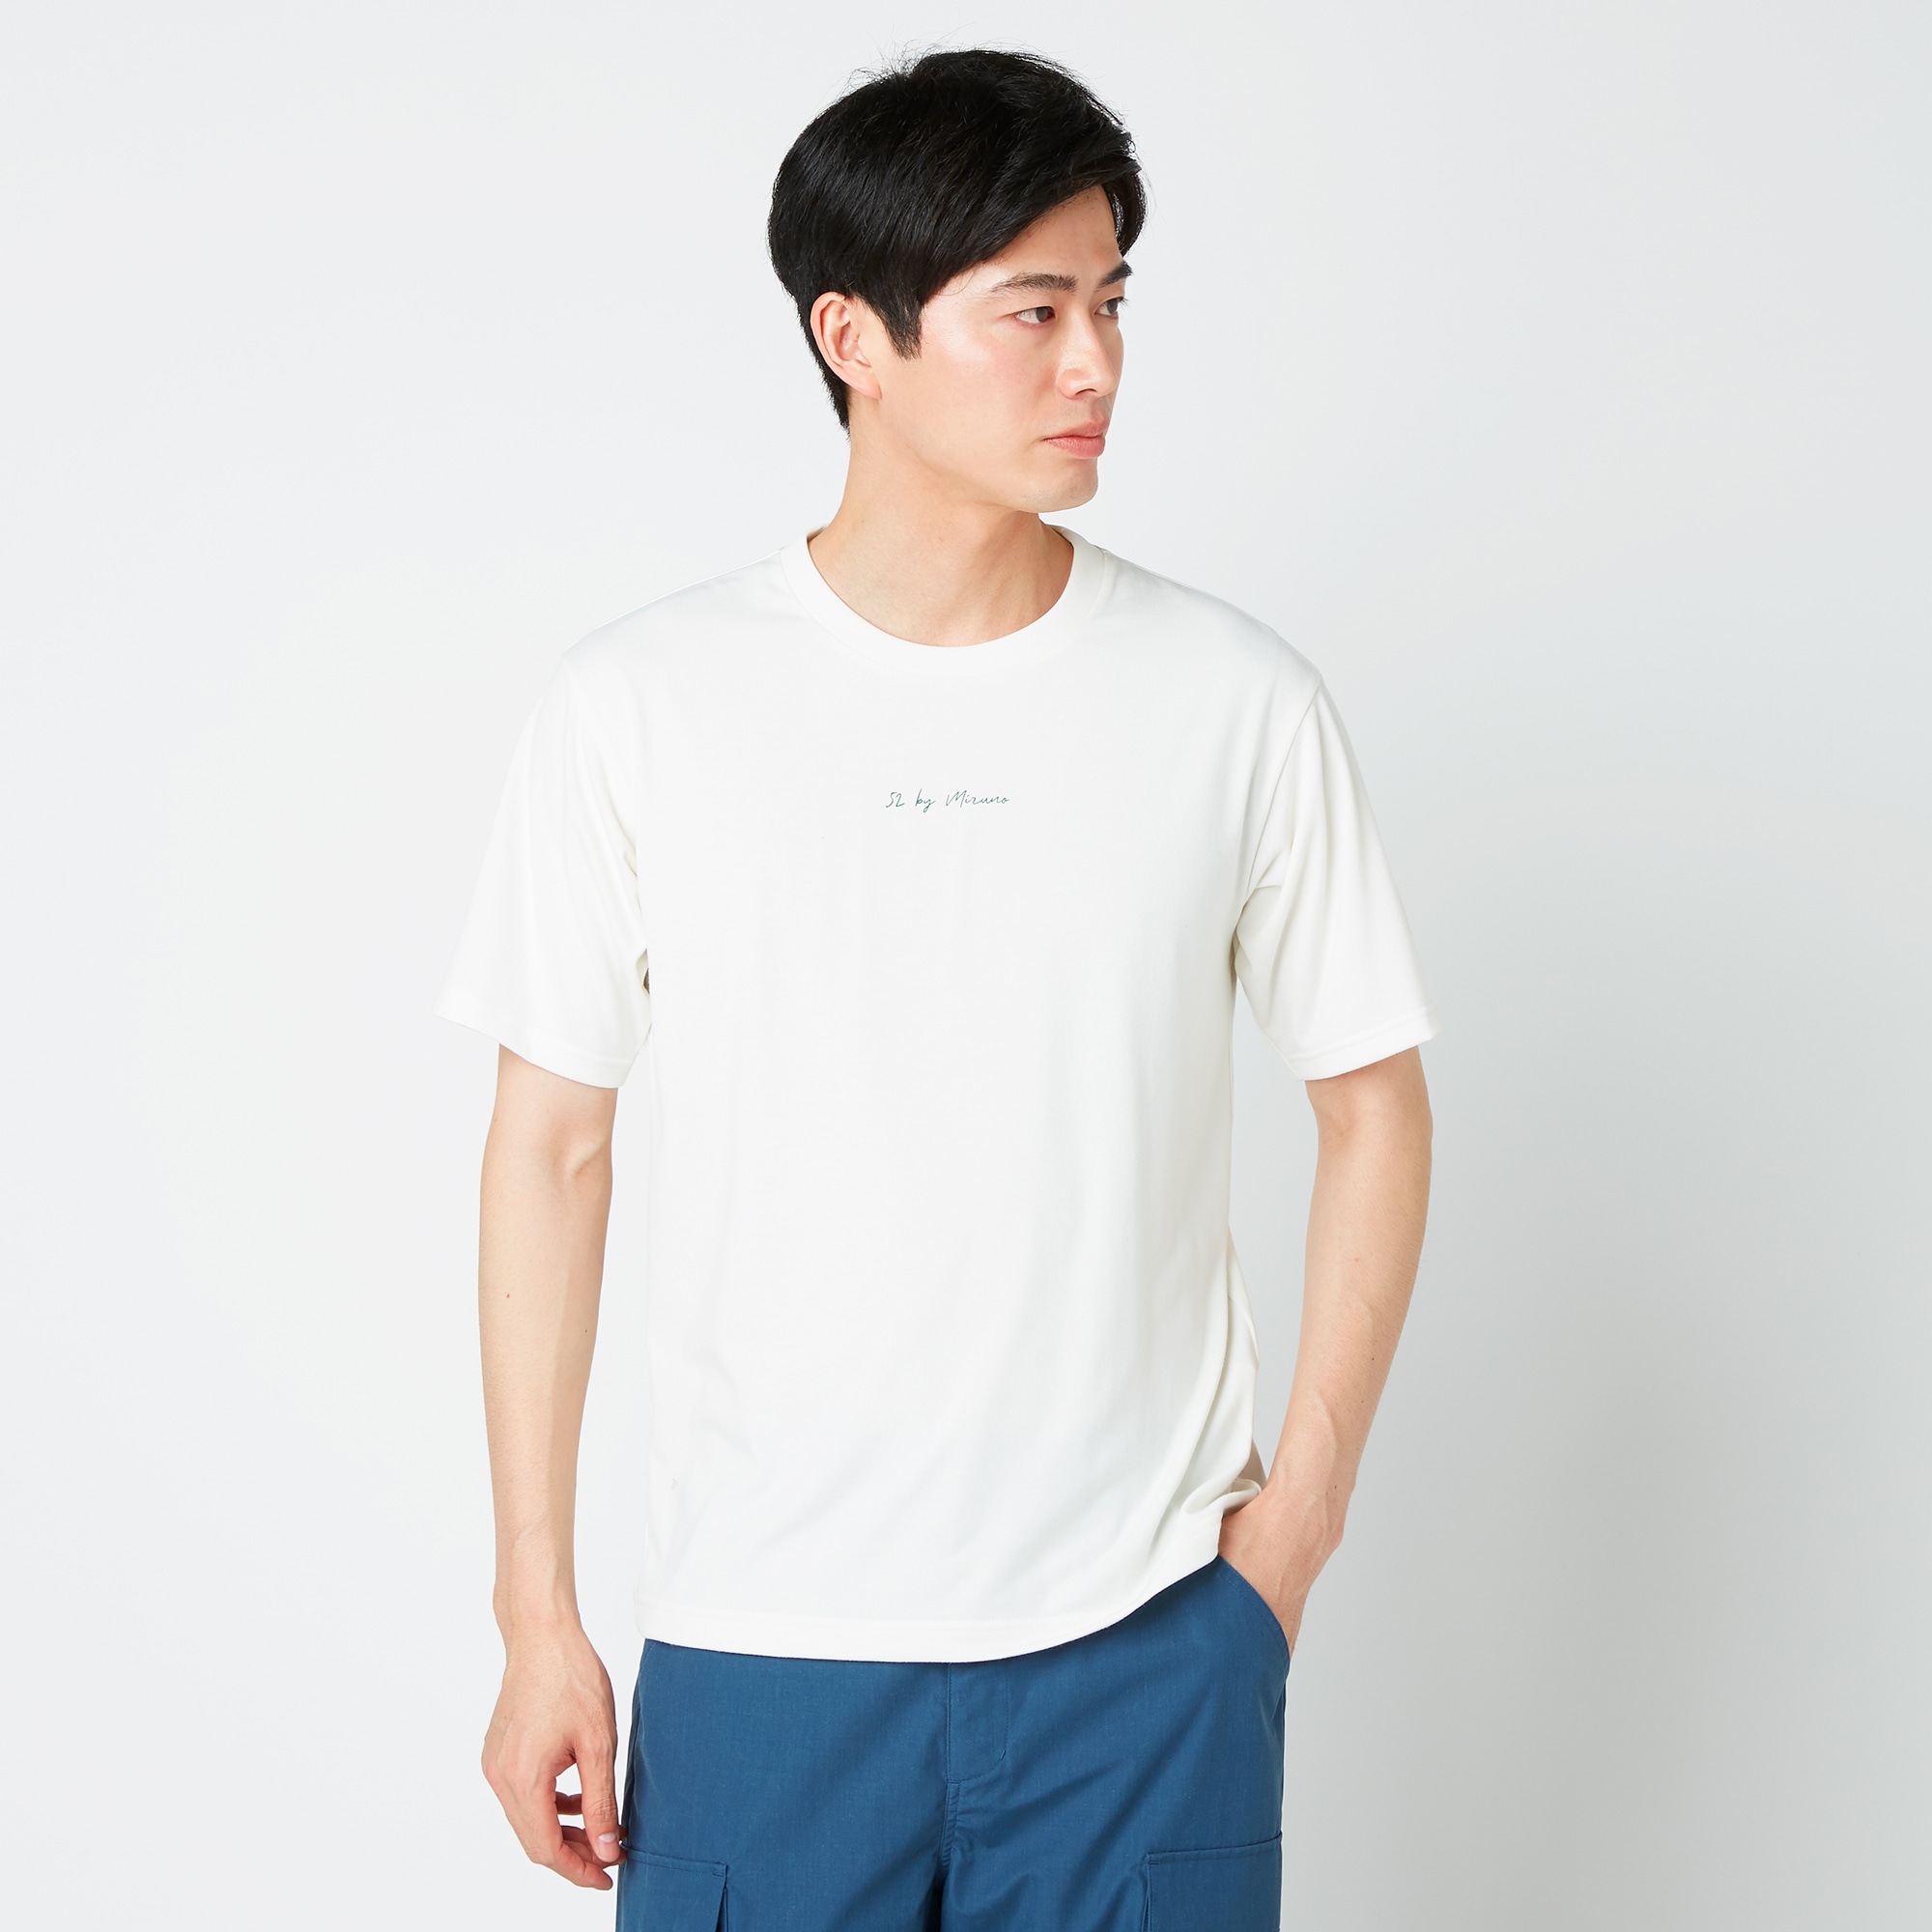 リサイクルポリエステルグラフィックTシャツ[メンズ]|B2MAA002|Go to by mizuno|ウォーキング|ミズノ公式オンライン